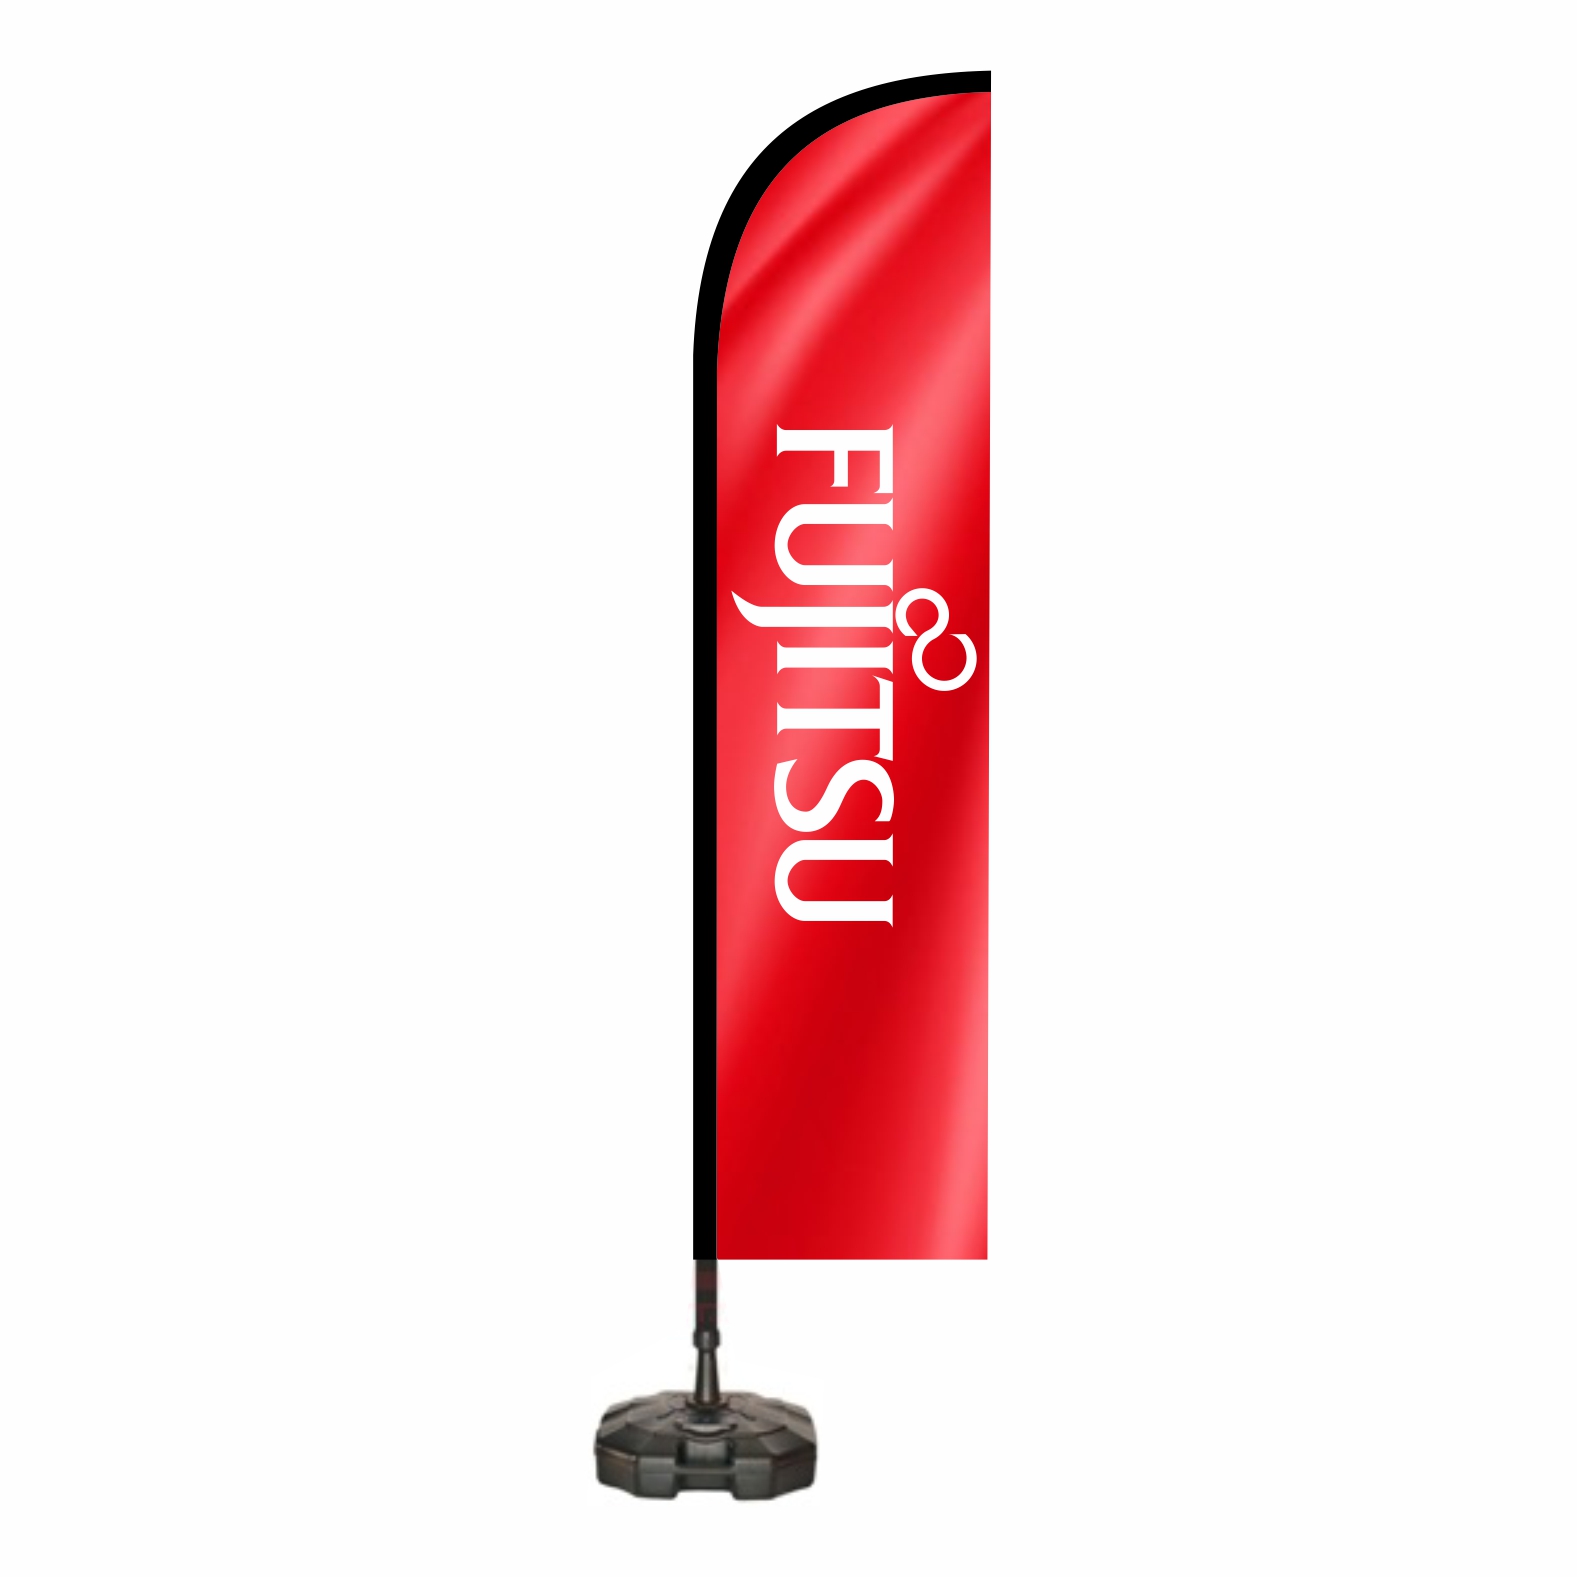 Fujitsu Oltalı bayraklar